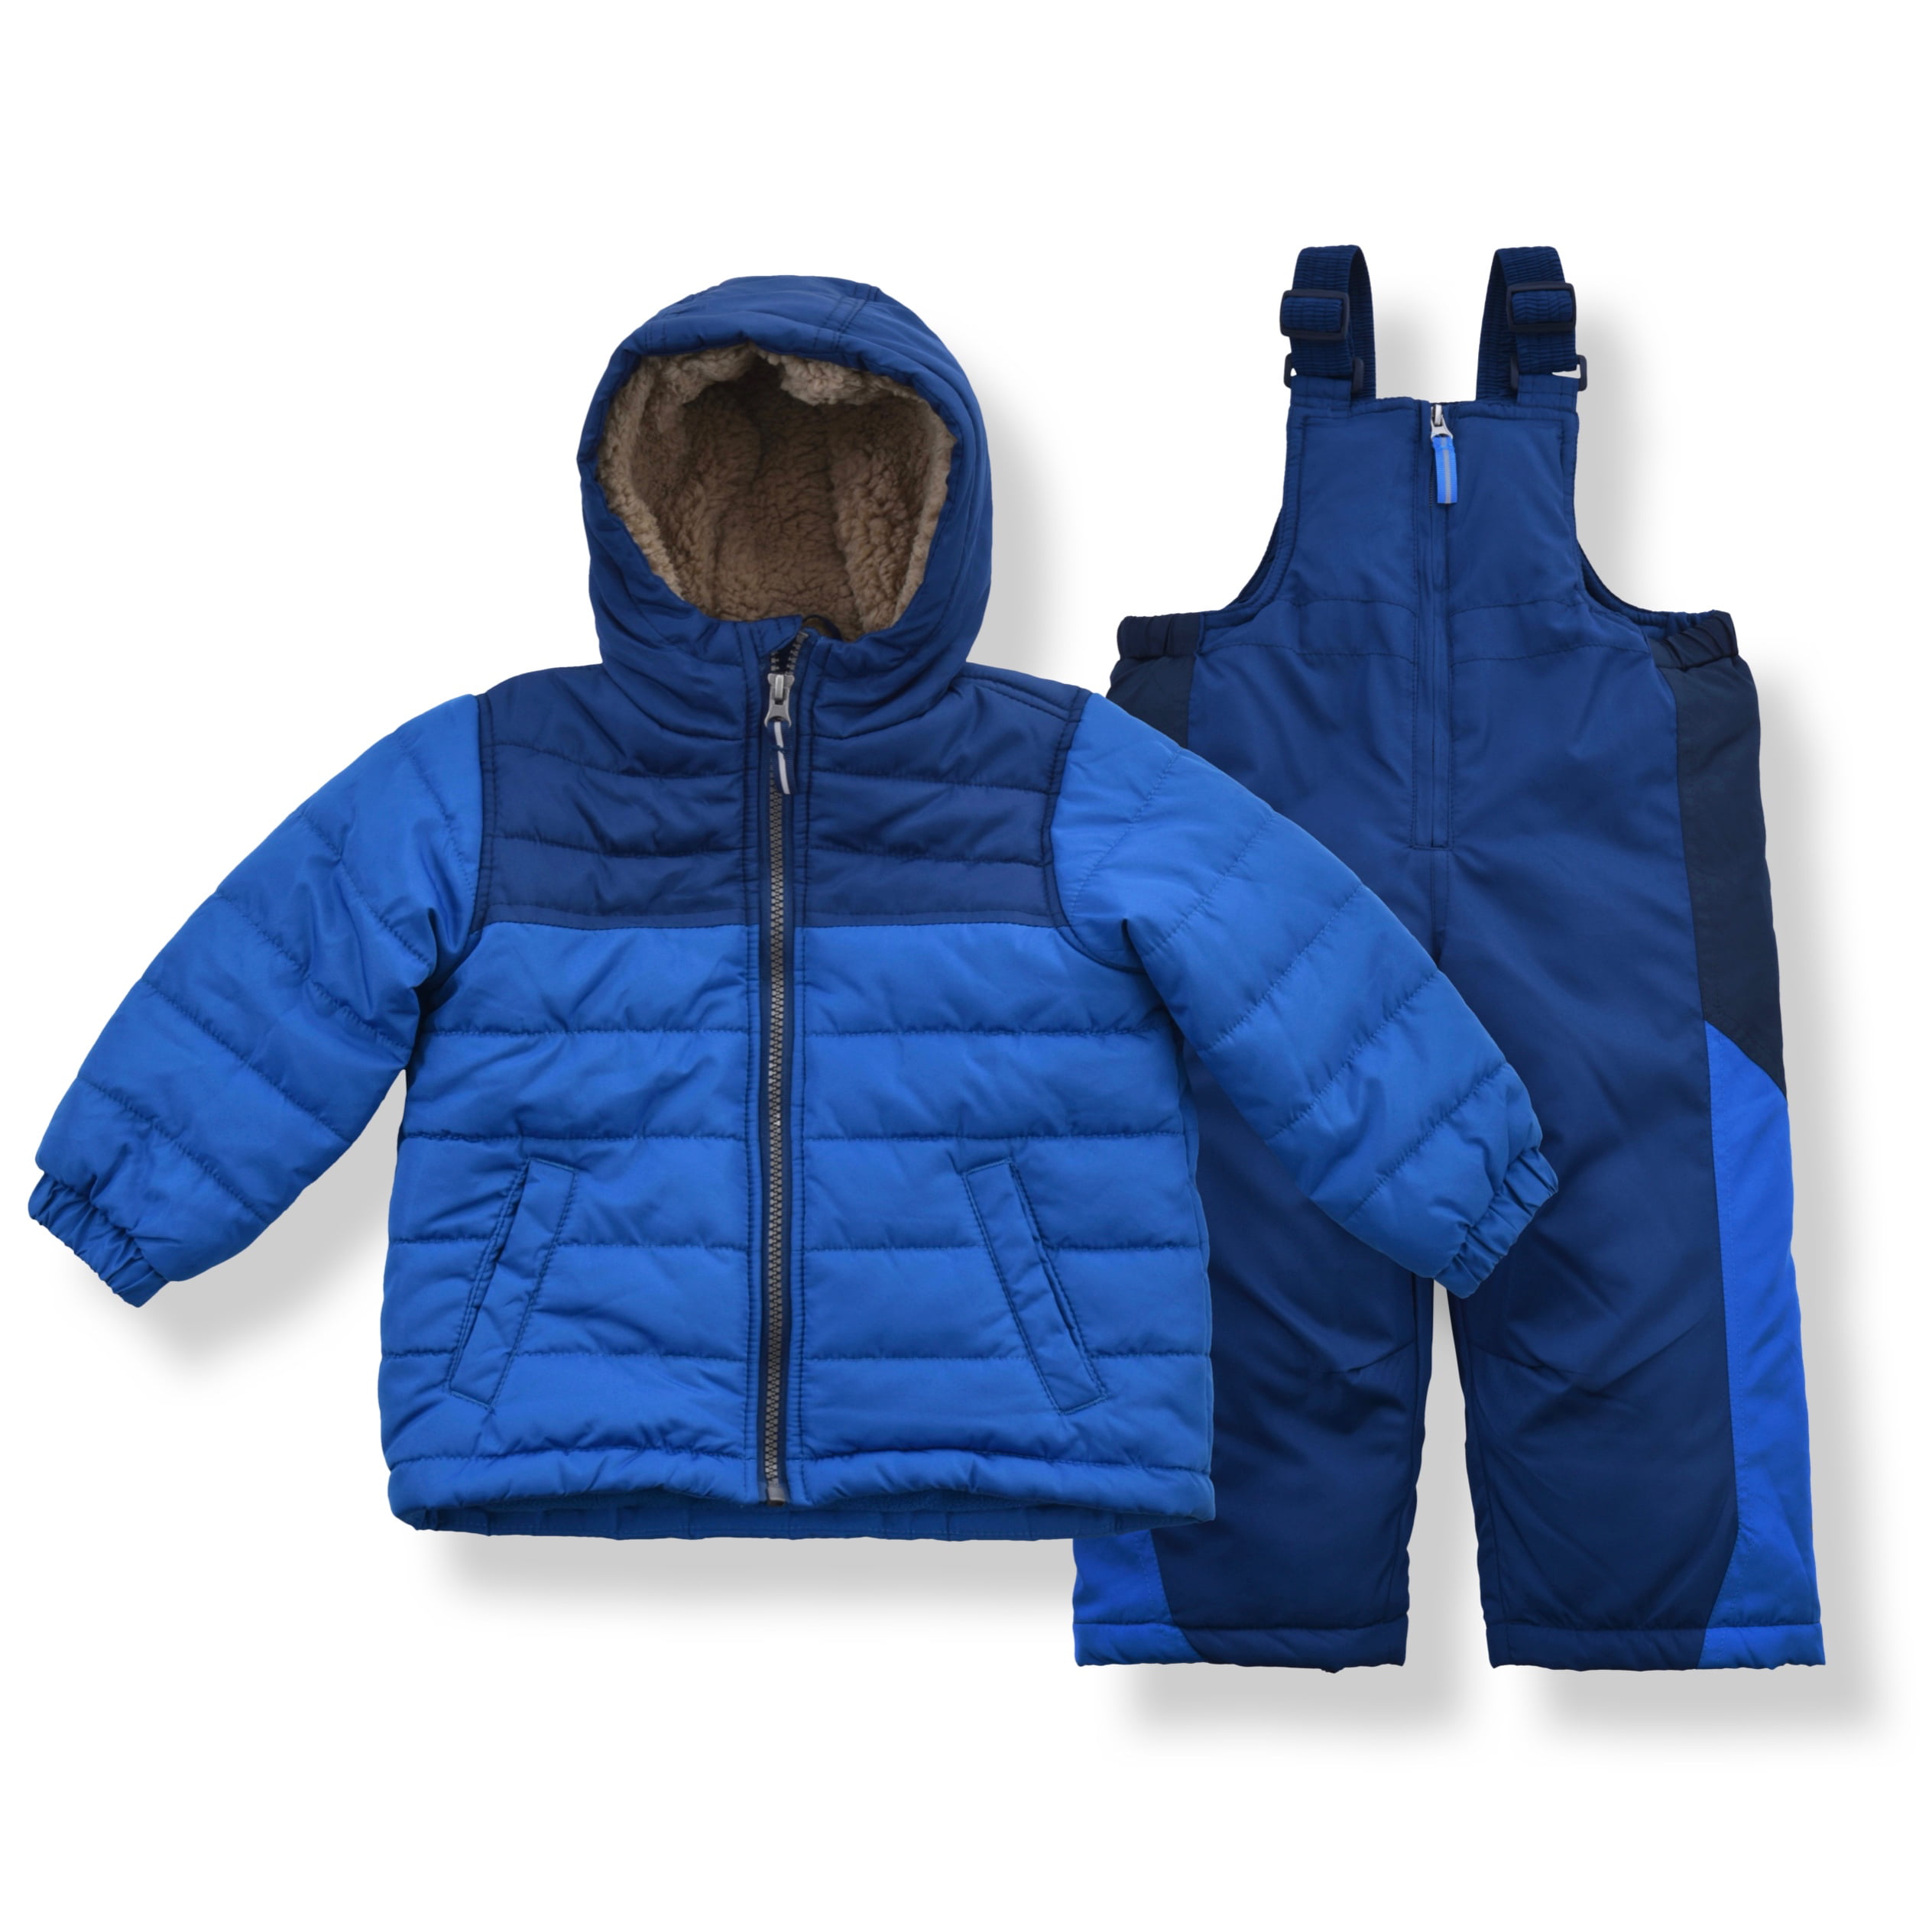 Photo 1 of Arctic Quest Boy's Color Block Puffer Jacket and Ski Bib Snowsuit Set - Size 7, Blue